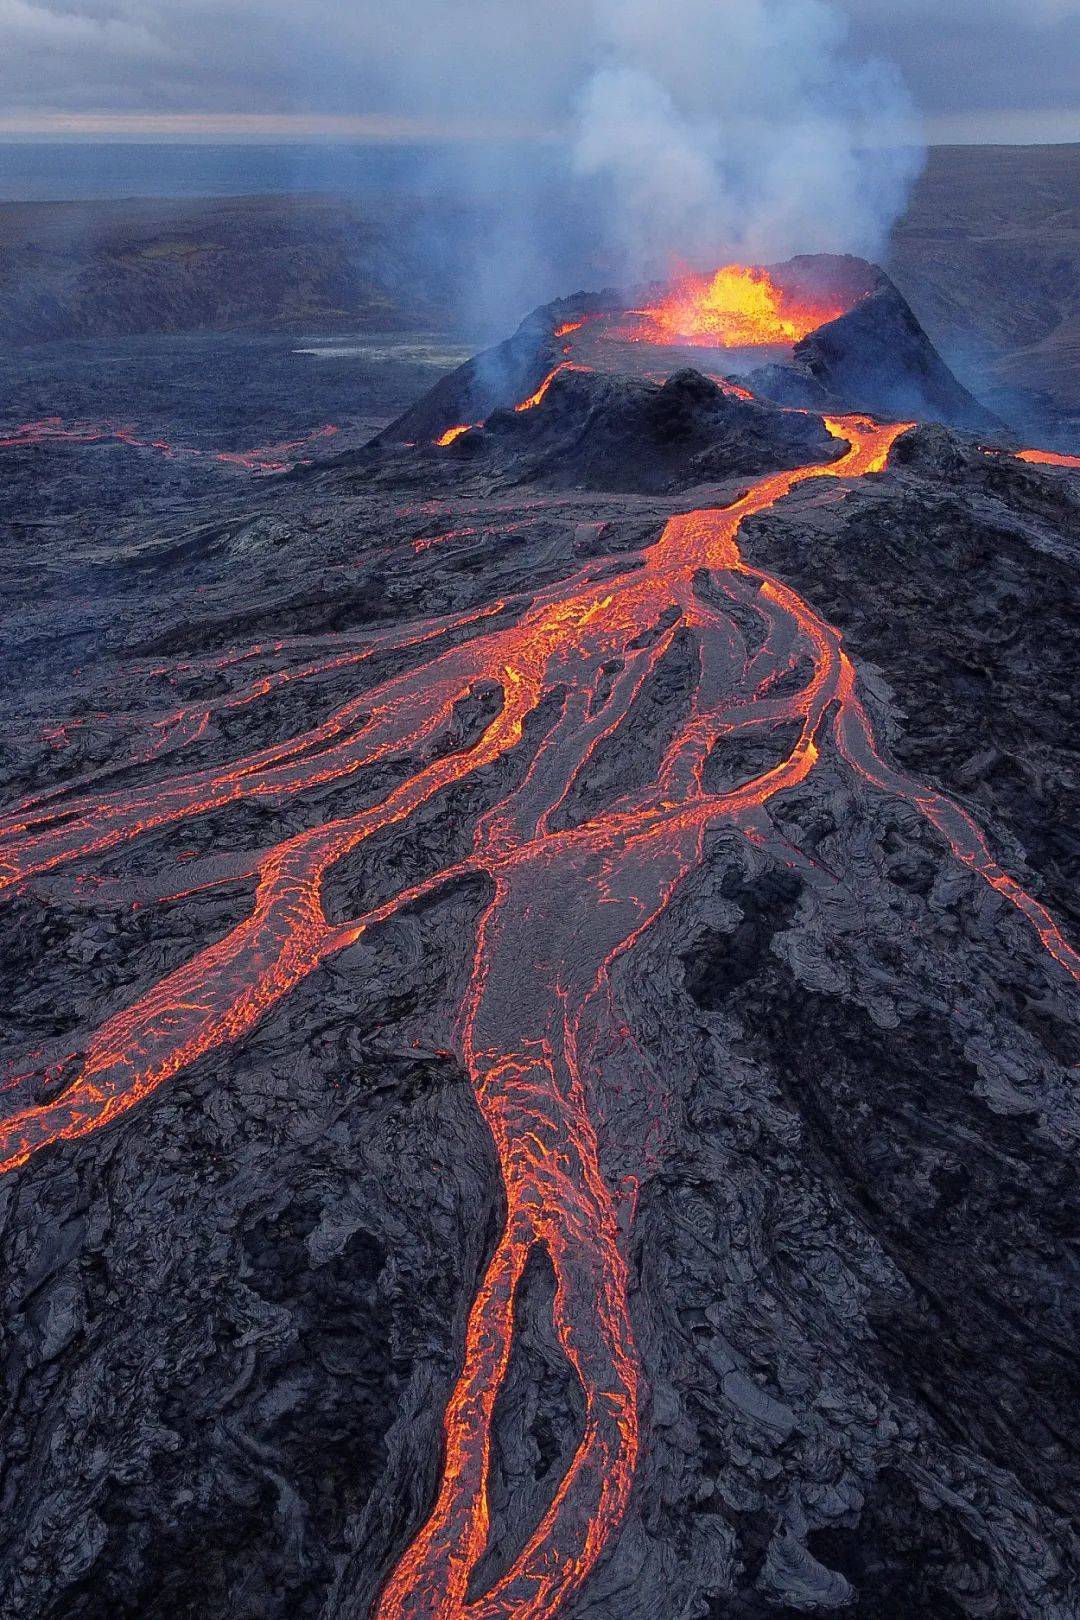 中国十大火山图片